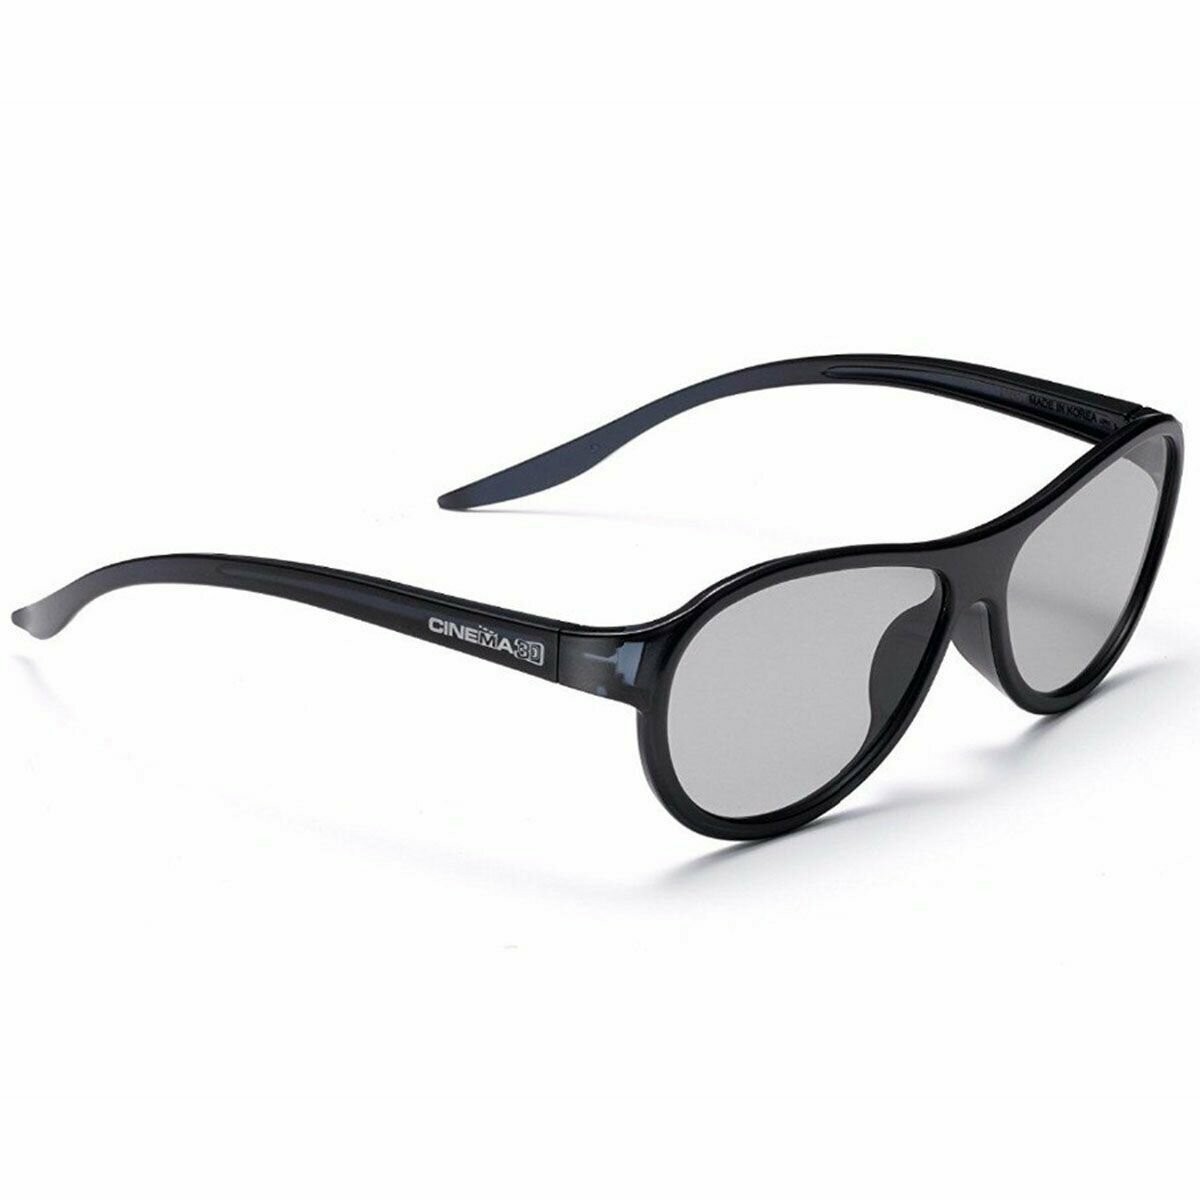 3D очки LG AG-F310 - 2 штуки, черные для телевизоров с пассивным типом 3D, универсальные, для кинотеатра